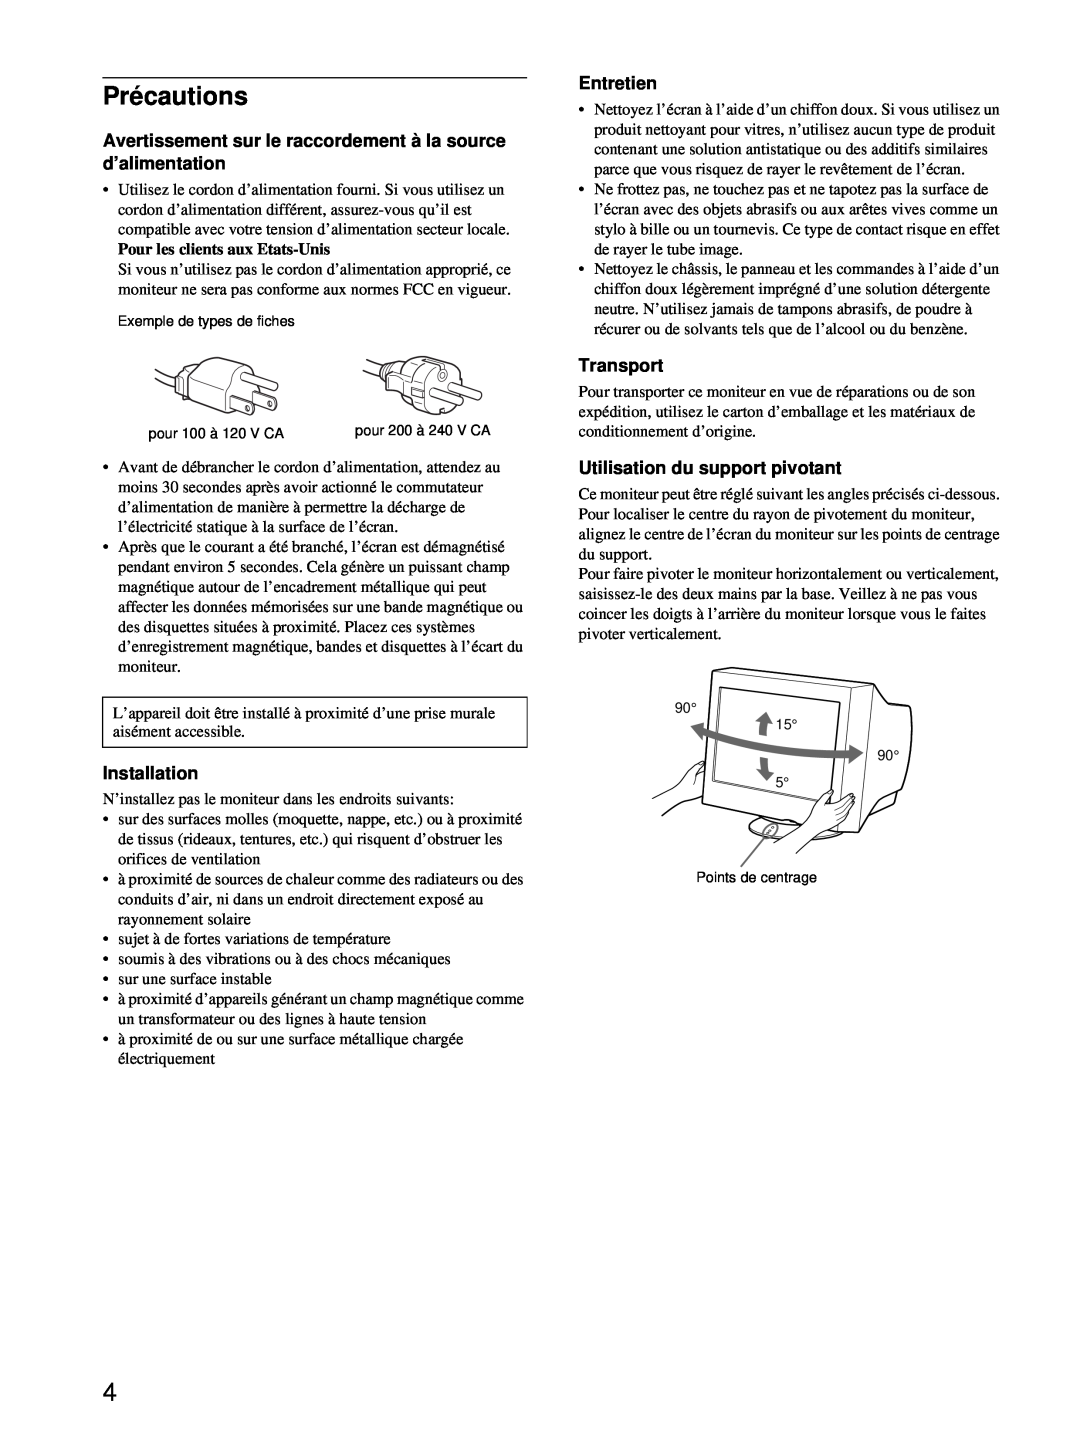 Sony CPD-E100 manual Précautions, Avertissement sur le raccordement à la source d’alimentation, Entretien, Transport 